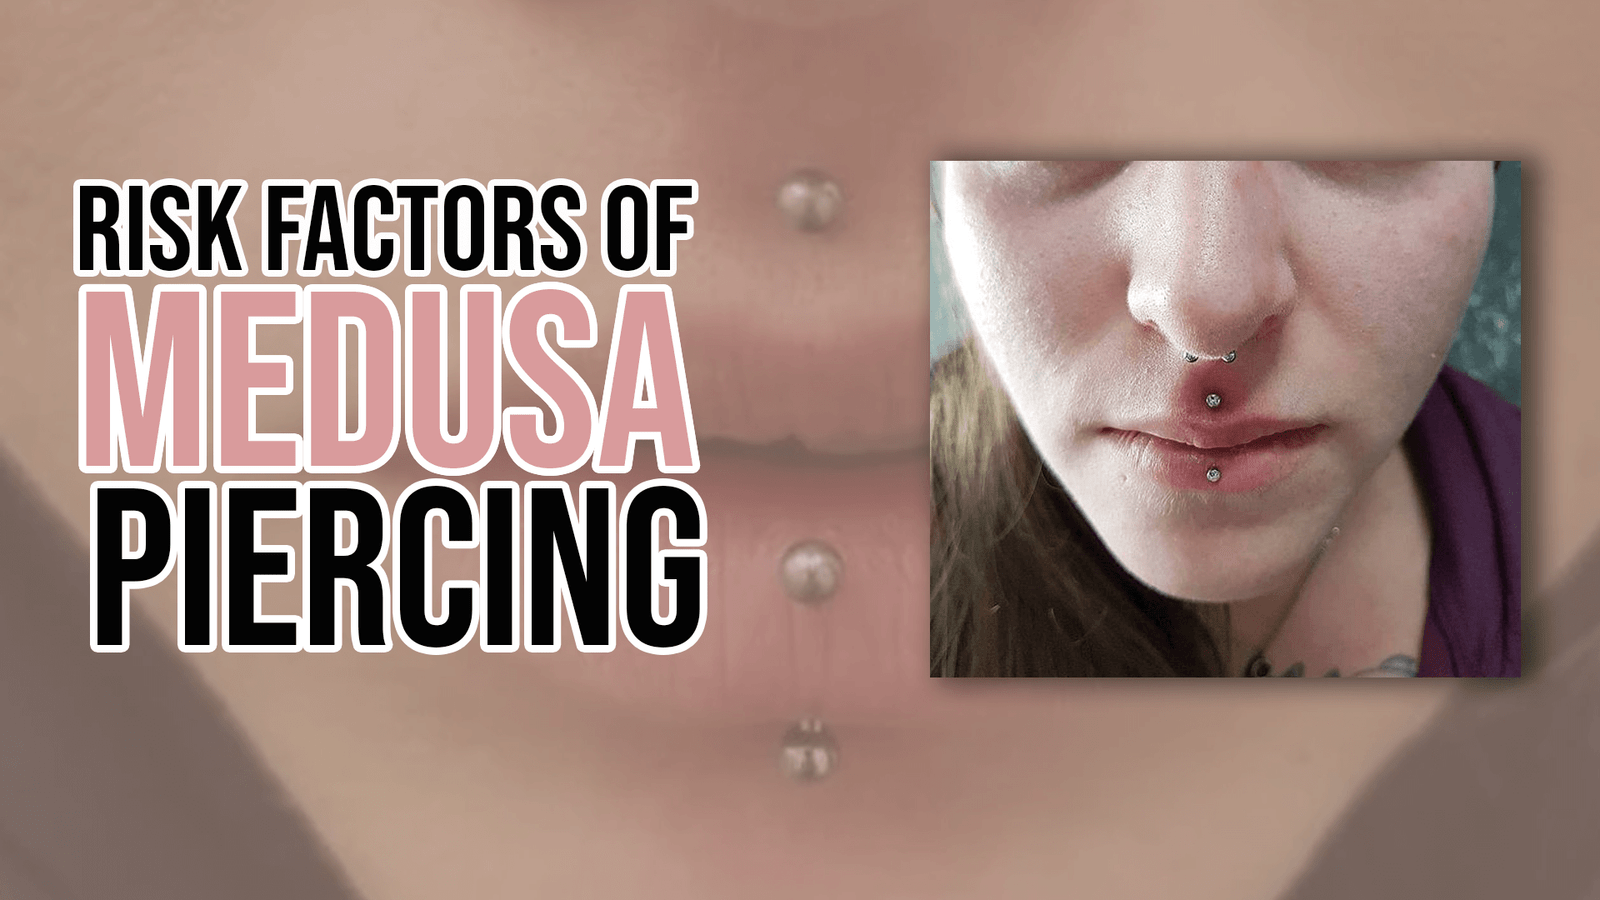 Risk Factors of Medusa Piercing